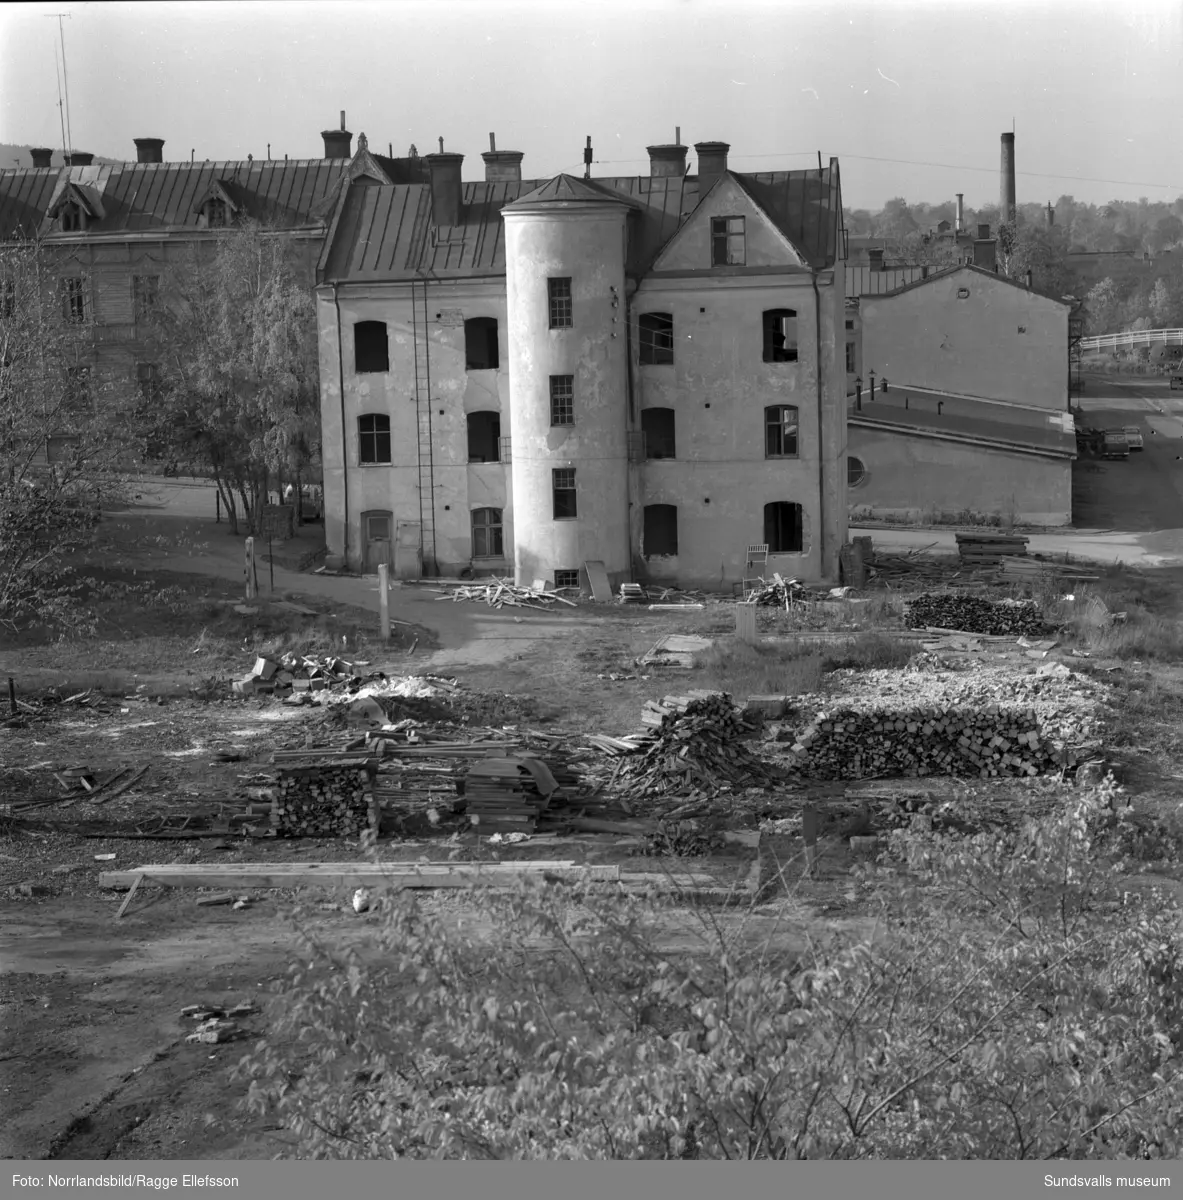 Rivningstomt och rivningshus i kvarteret Guldsmeden, Storgatan 48-52, fotograferat från det så kallade Sprickhuset. En minigolfbana har tidigare funnits på tomten.